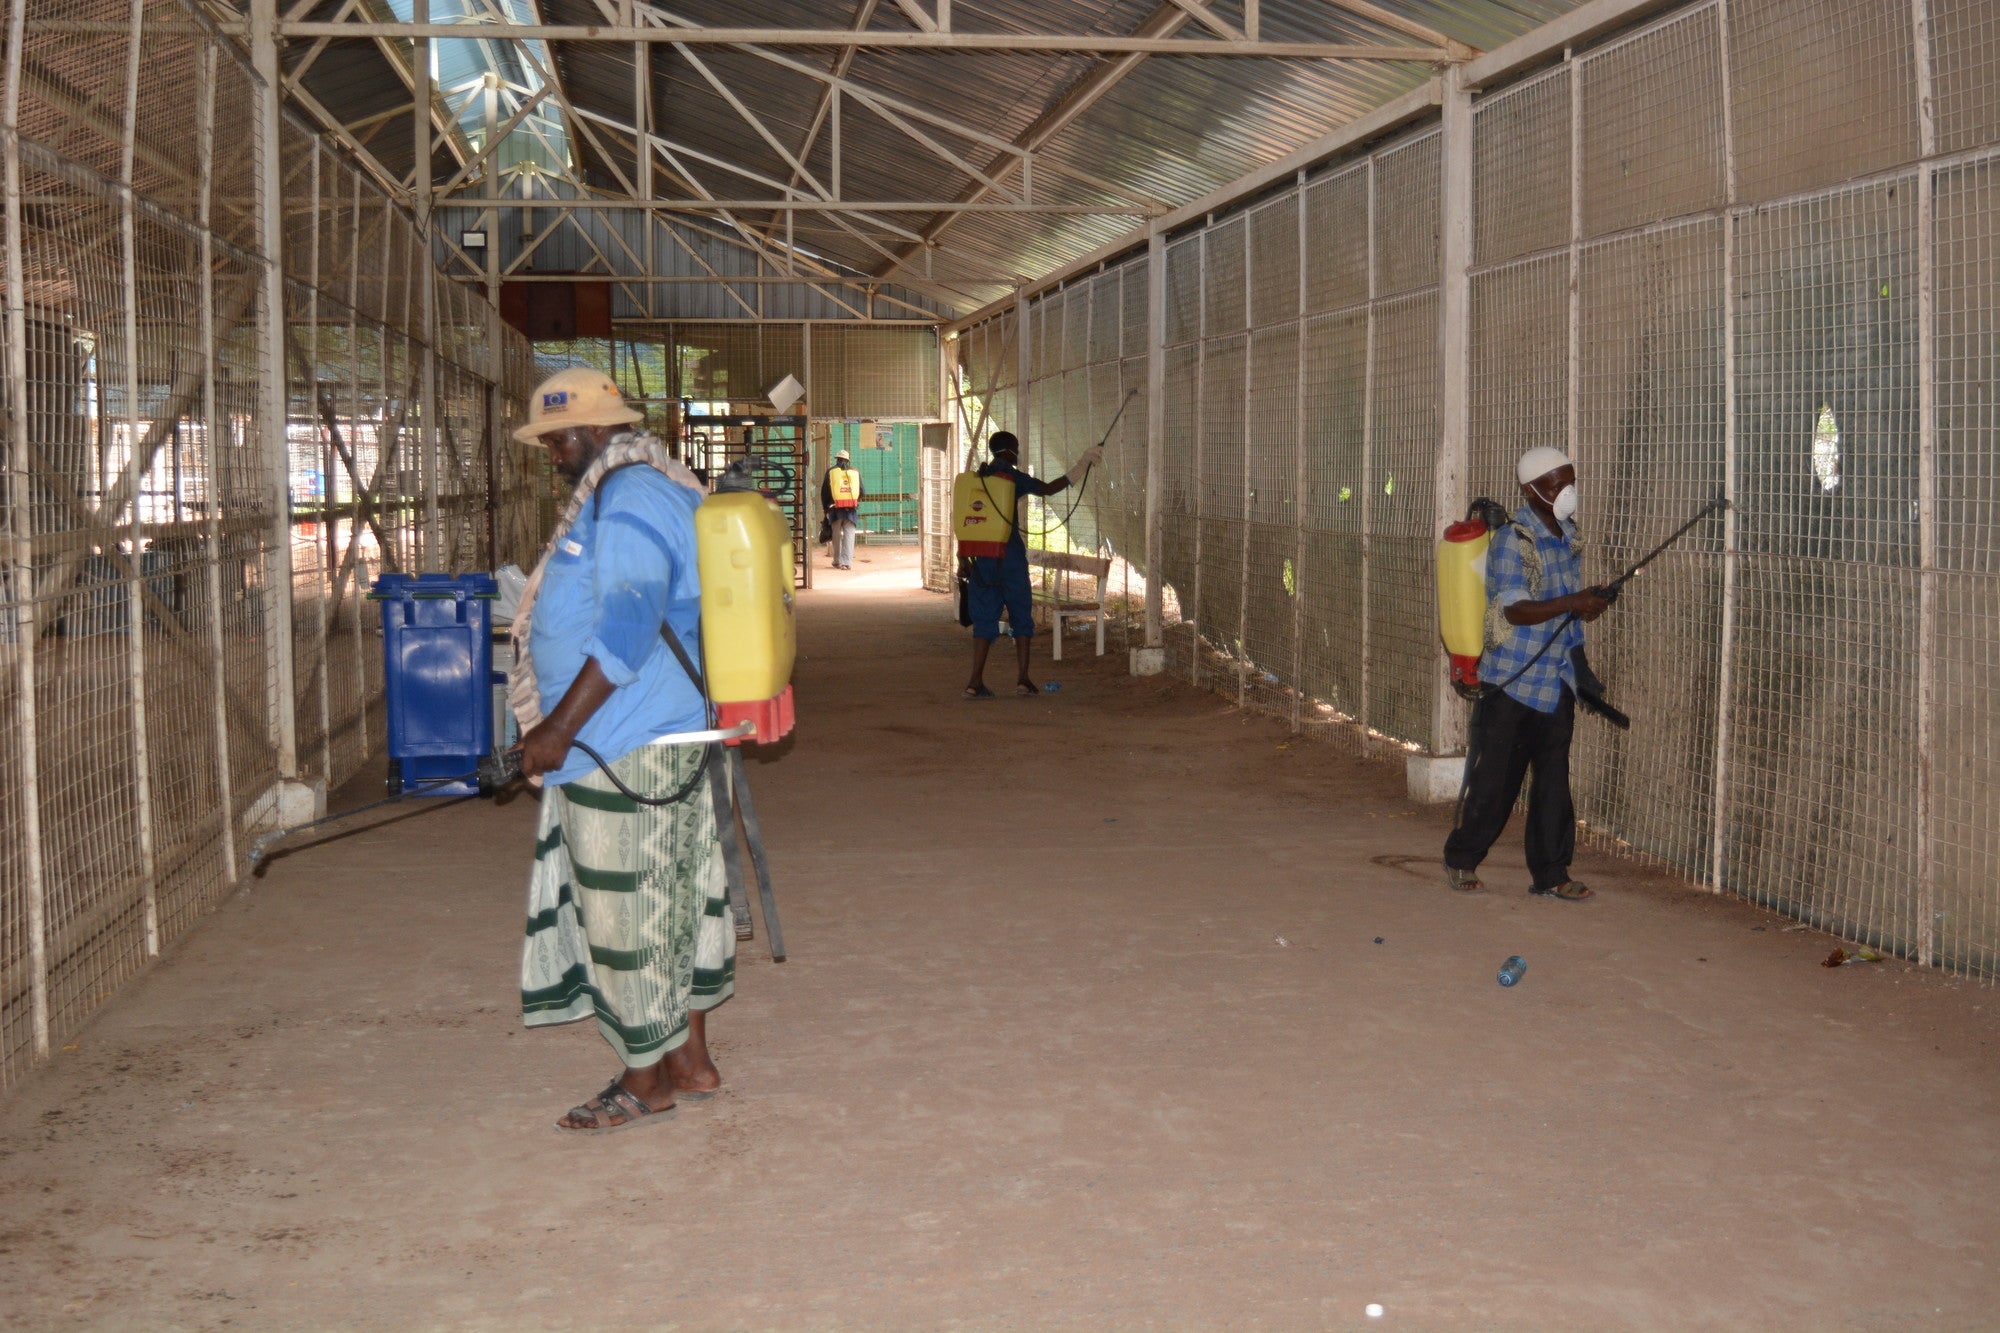 A fines de abril, CARE había llegado a casi todos los habitantes de Dadaab, así como a las comunidades de acogida, con un suministro de agua muy necesario. CARE también ha distribuido jabón y ha ayudado con capacitaciones de higiene sobre métodos de lavado de manos. Foto de CARE